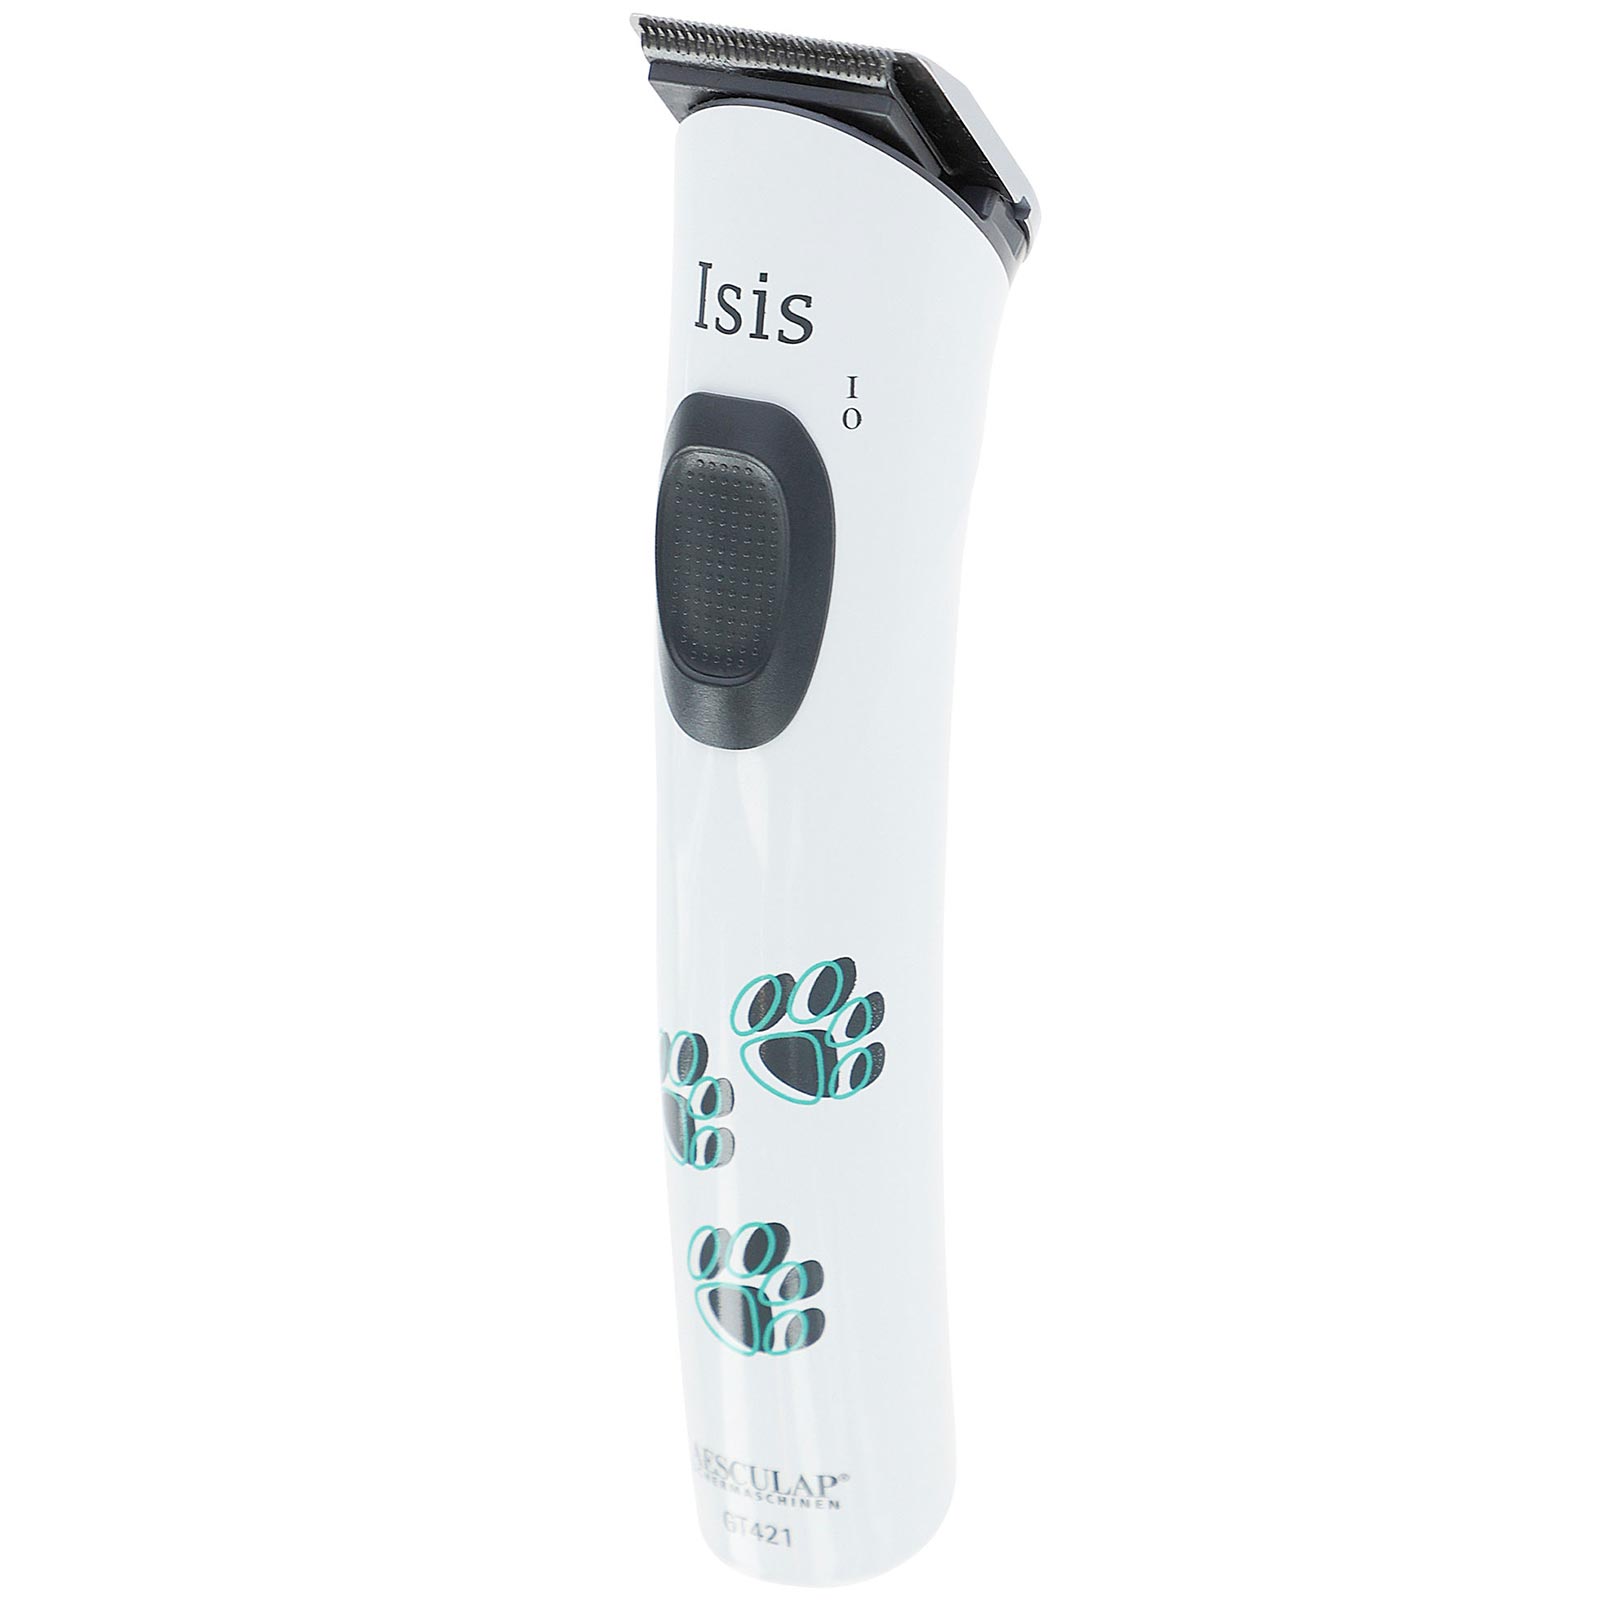 Tondeuse pour chiens sans fil Isis d'Aesculap - pour des zones spécifiques